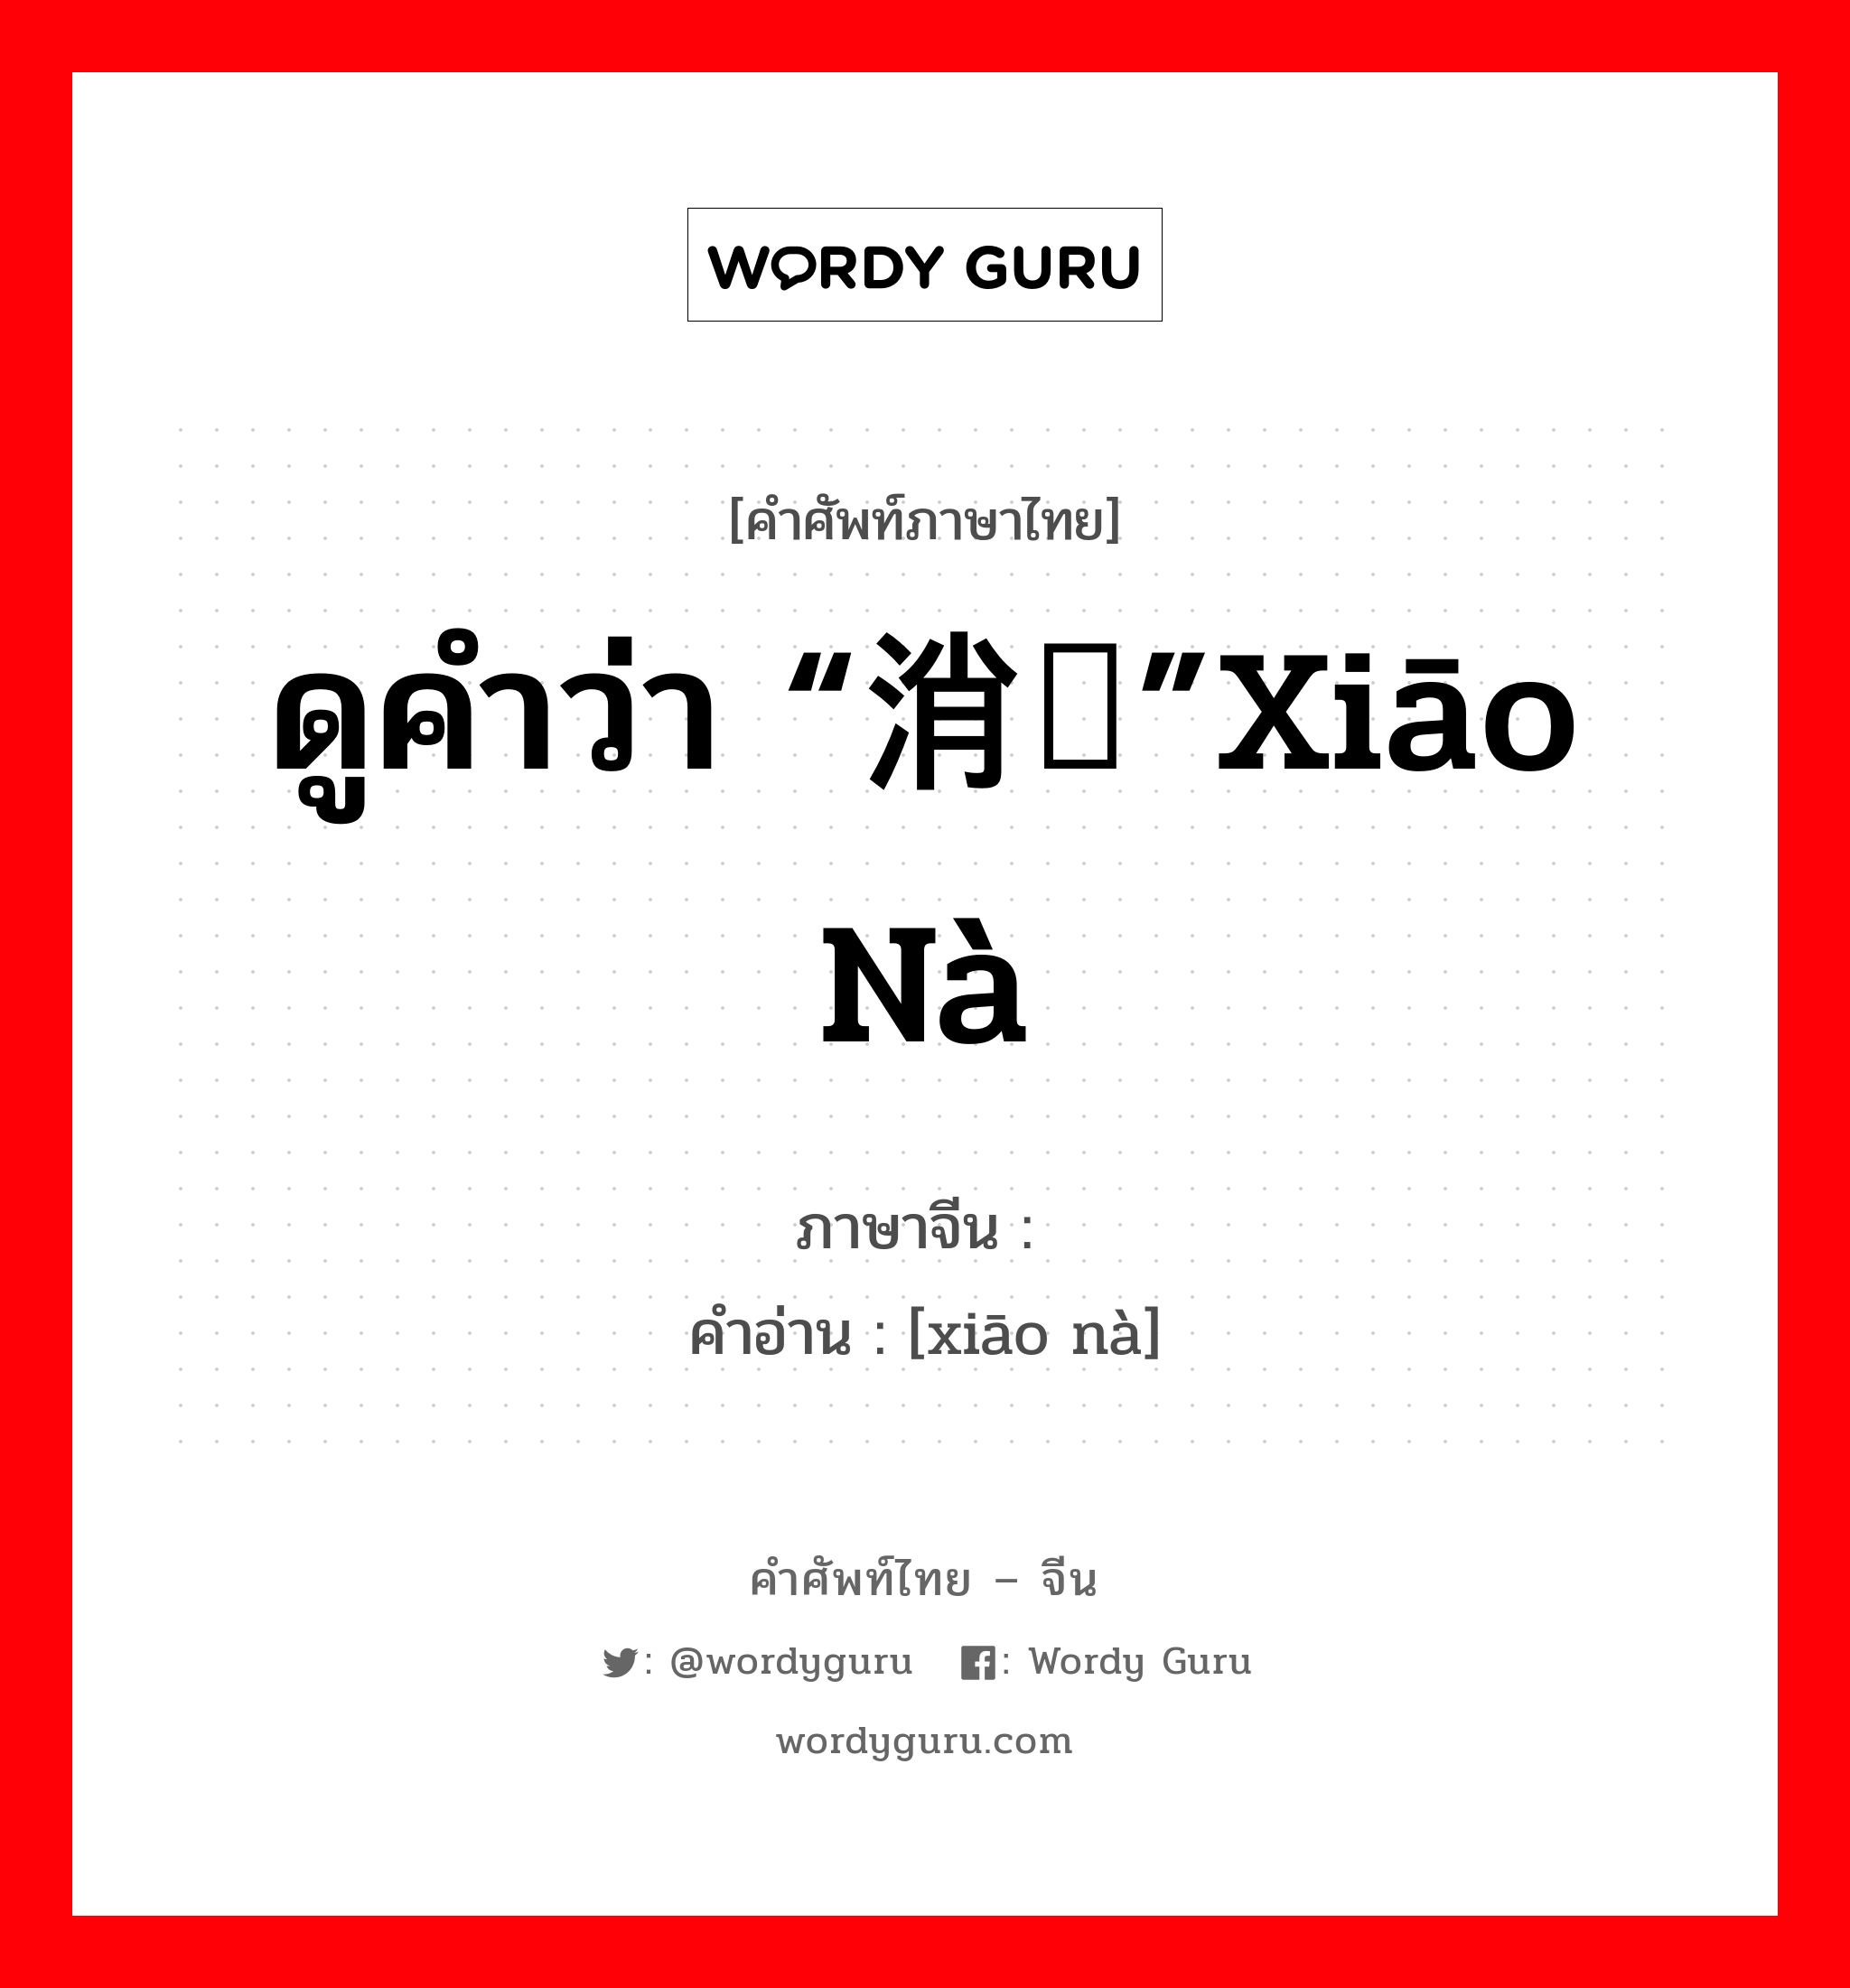 ดูคำว่า “消纳”xiāo nà ภาษาจีนคืออะไร, คำศัพท์ภาษาไทย - จีน ดูคำว่า “消纳”xiāo nà ภาษาจีน 销纳 คำอ่าน [xiāo nà]